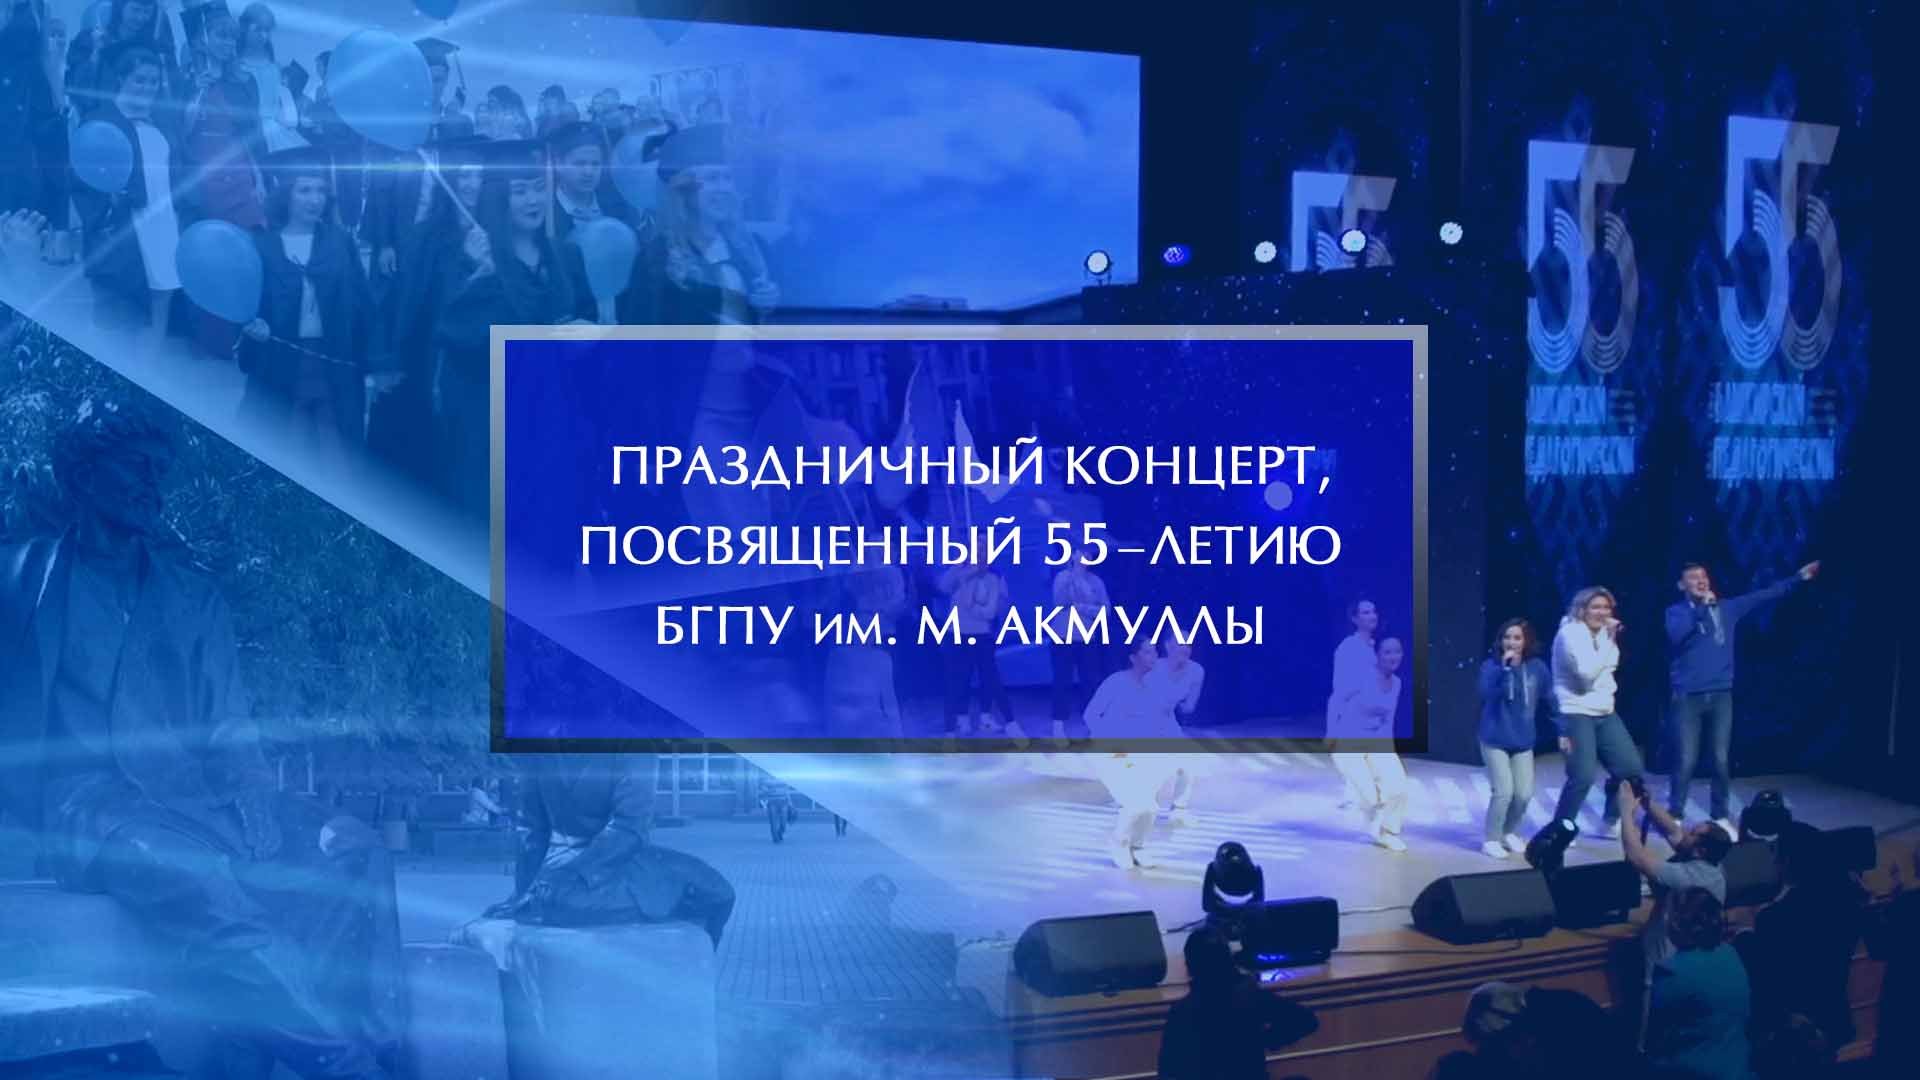 Праздничный концерт, посвященный 55-летию БГПУ им. М. Акмуллы